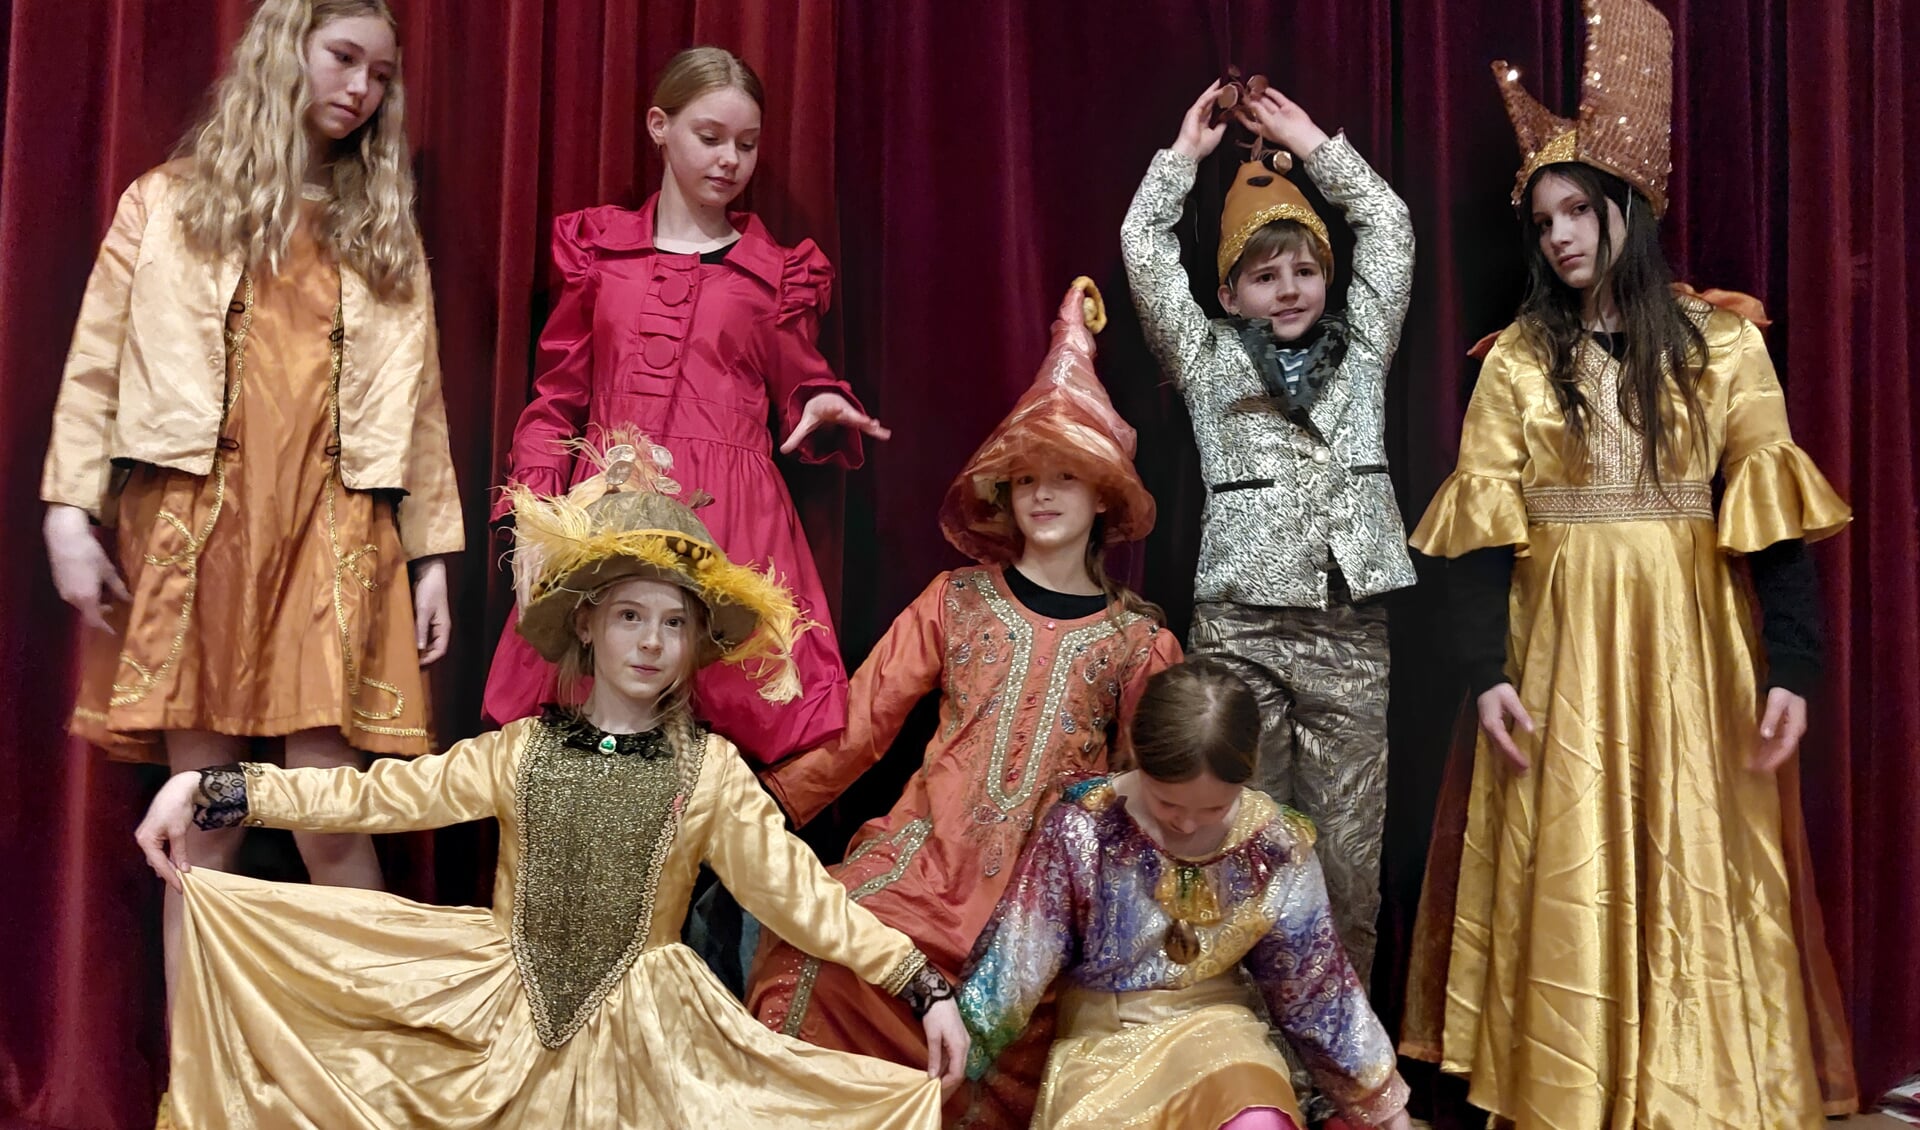 De jonge spelers van Zjuust brengen de voorstelling tot leven met betoverende kostuums. Foto: Femke Dekker